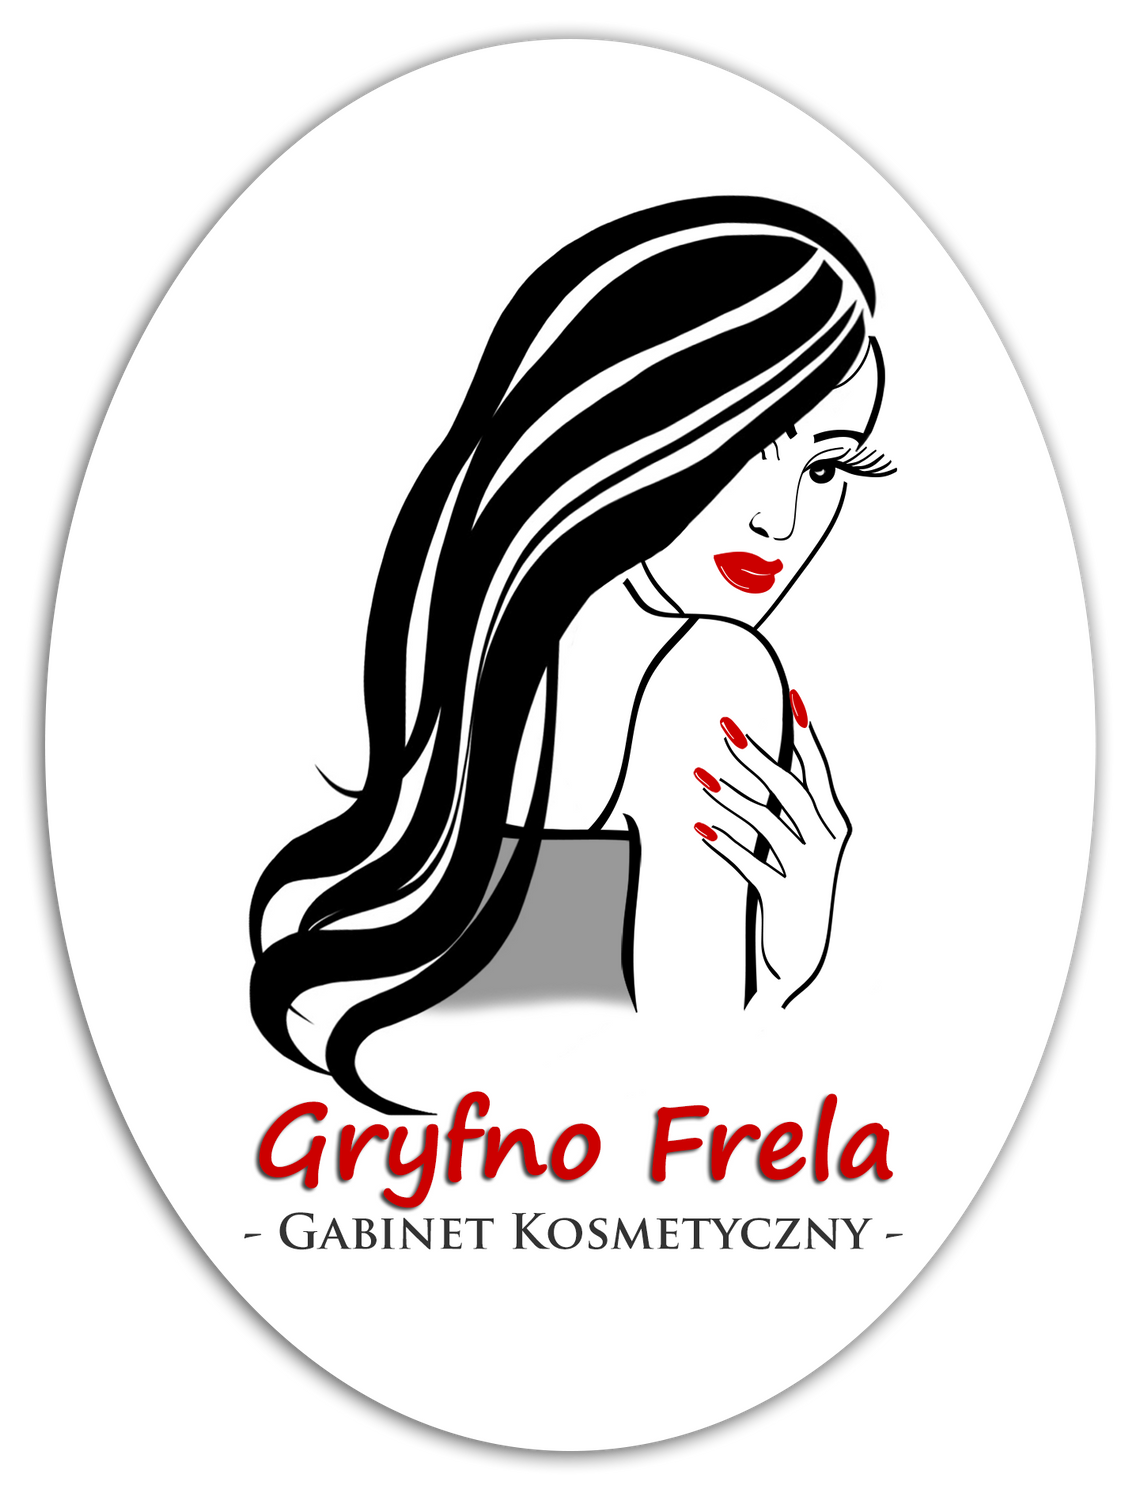 Gryfno Frela - salon kosmetyczny